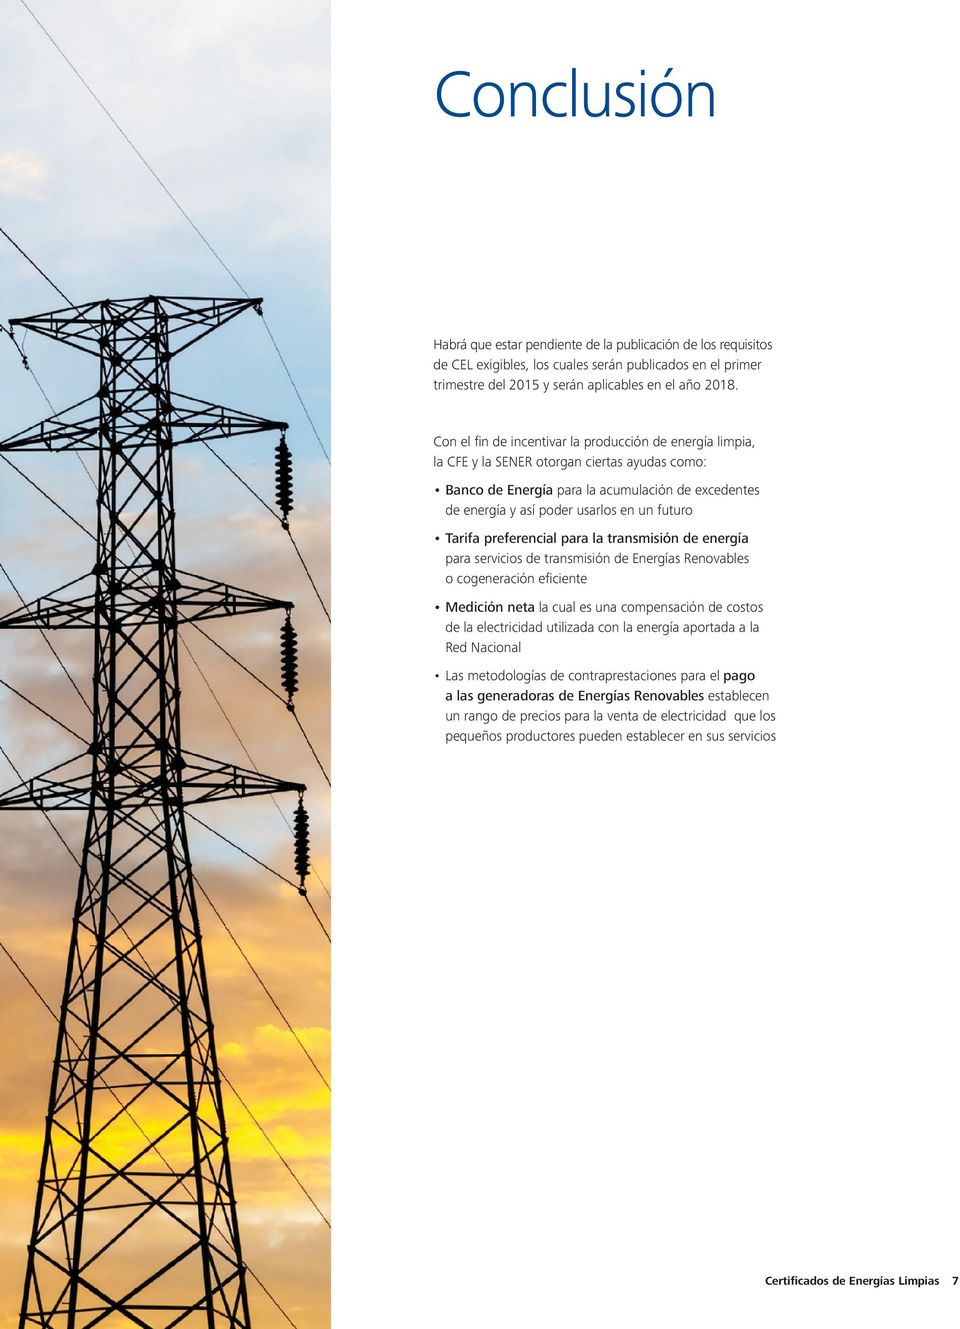 Tarifa preferencial para la transmisión de energía para servicios de transmisión de Energías Renovables o cogeneración eficiente Medición neta la cual es una compensación de costos de la electricidad